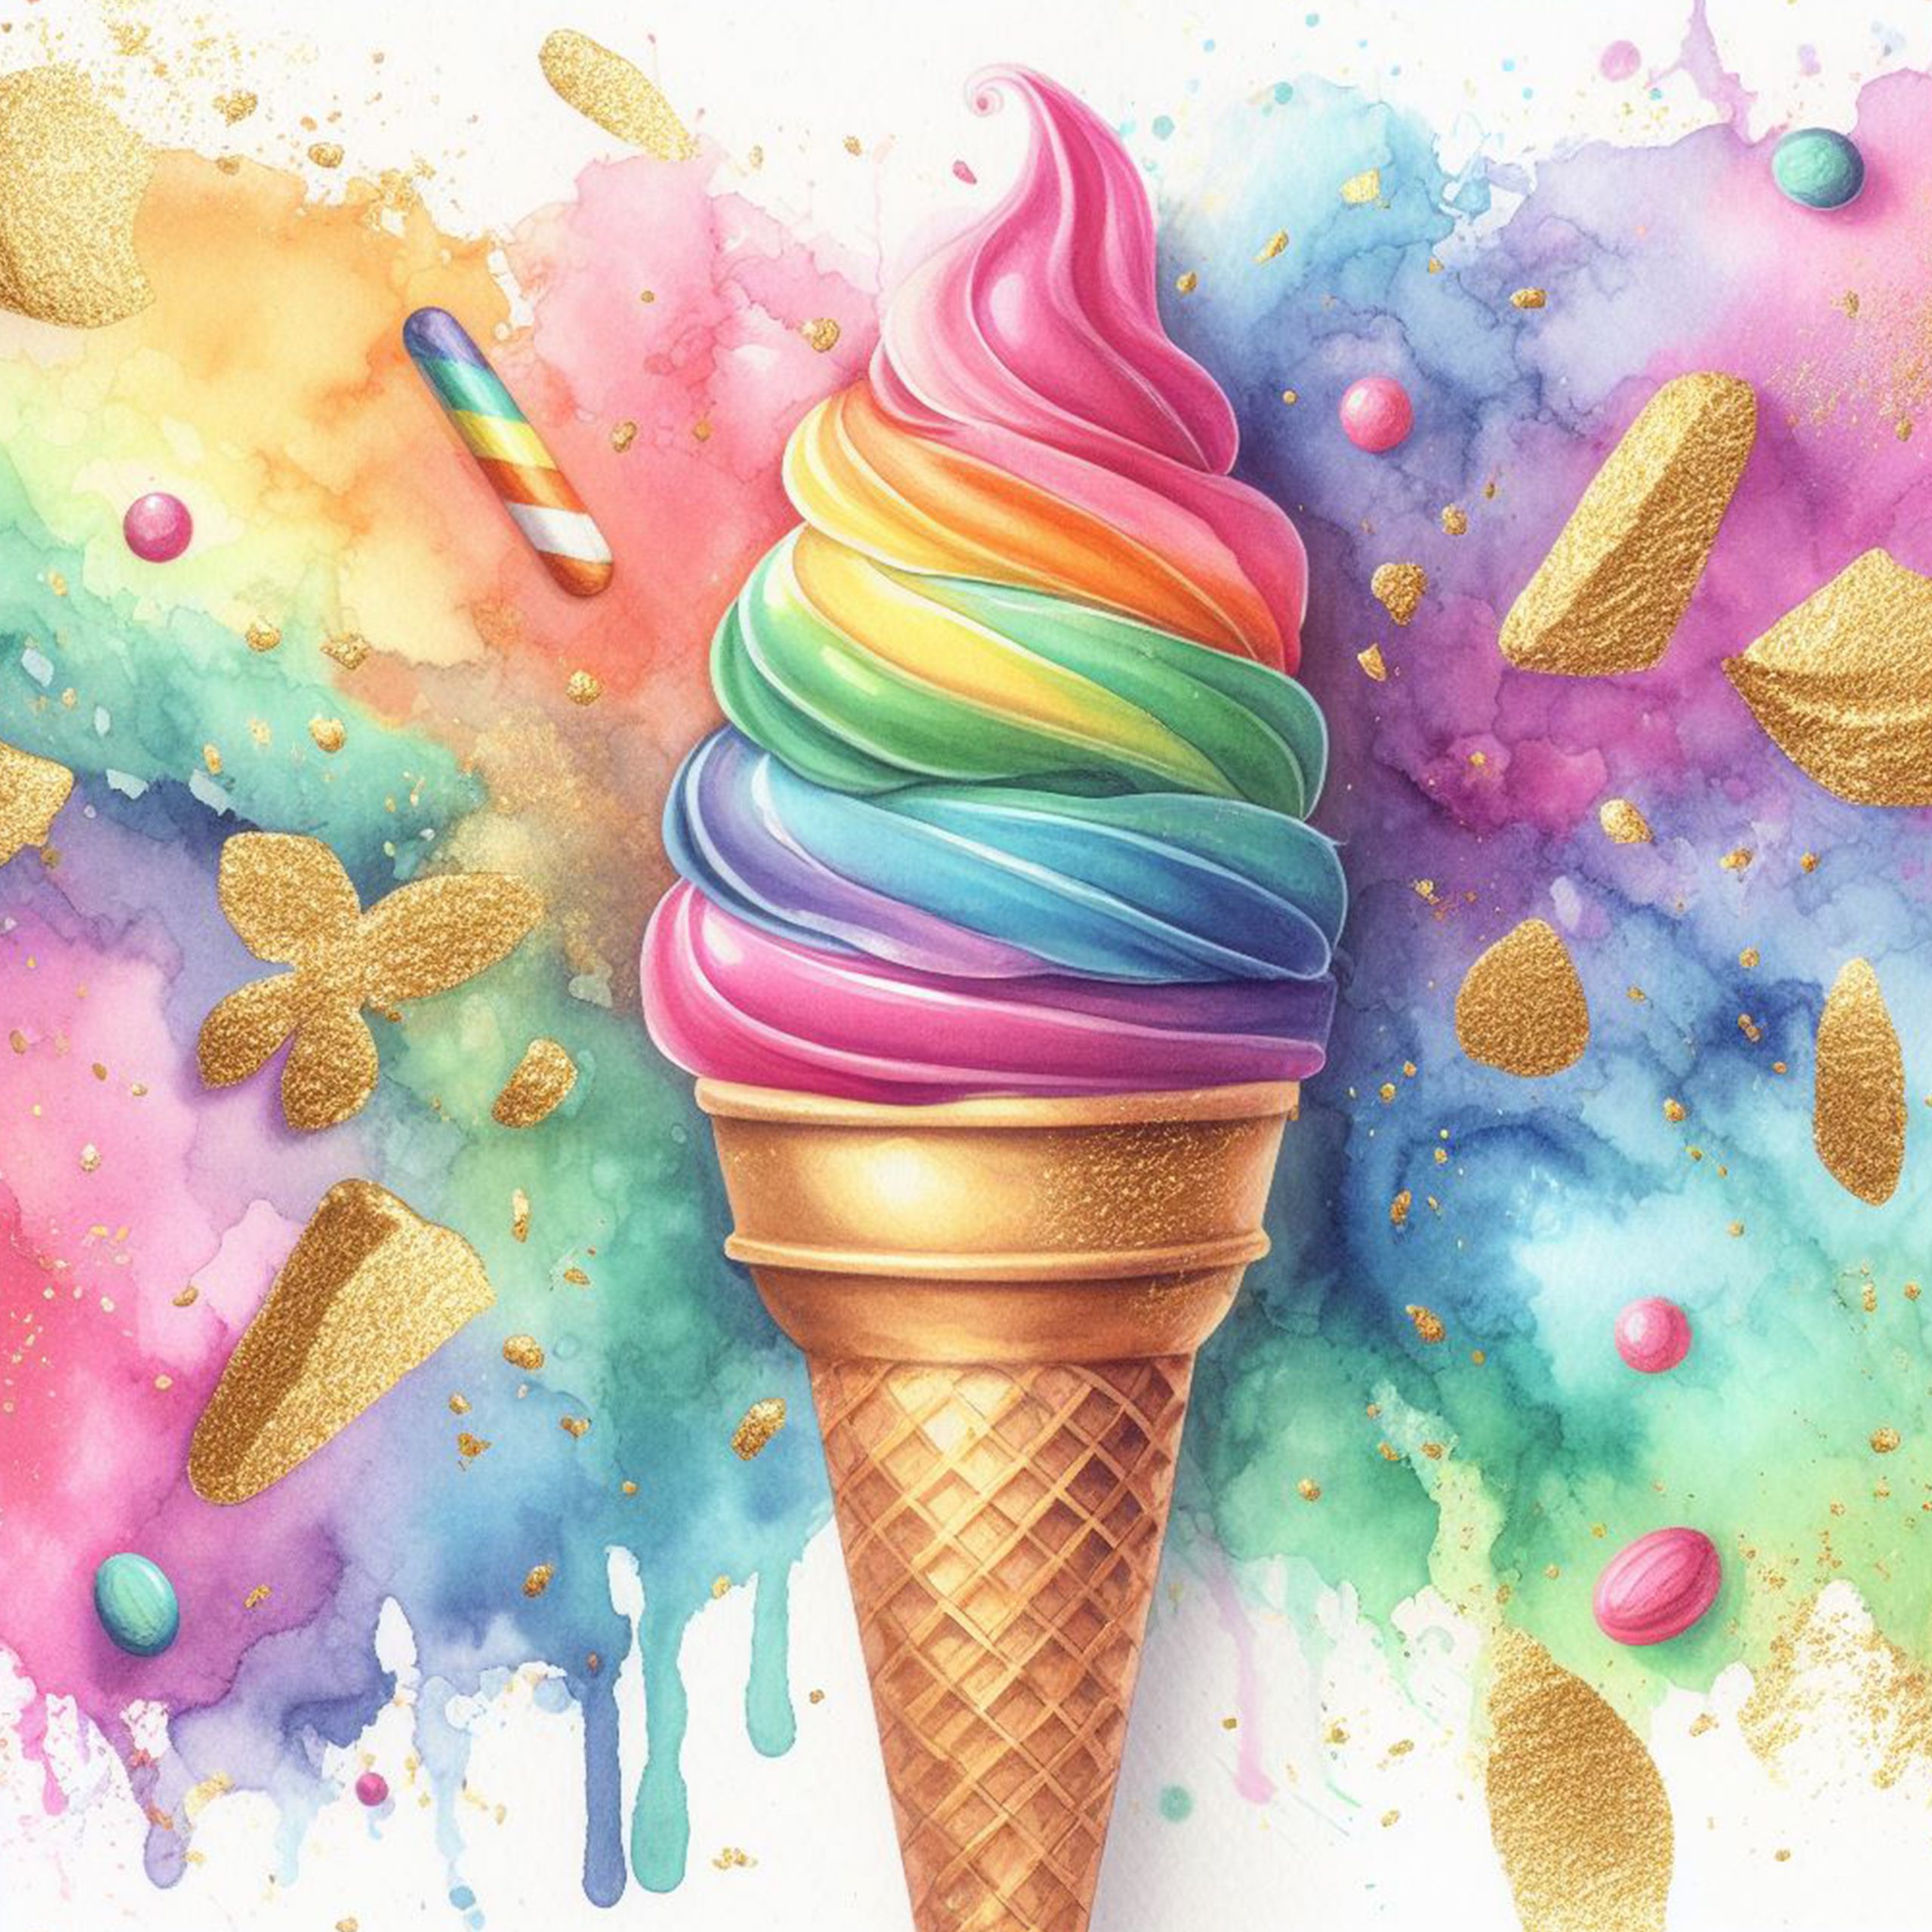 Delicioso helado arcoiris sobre un fondo de pintura de colores y brillo dorado